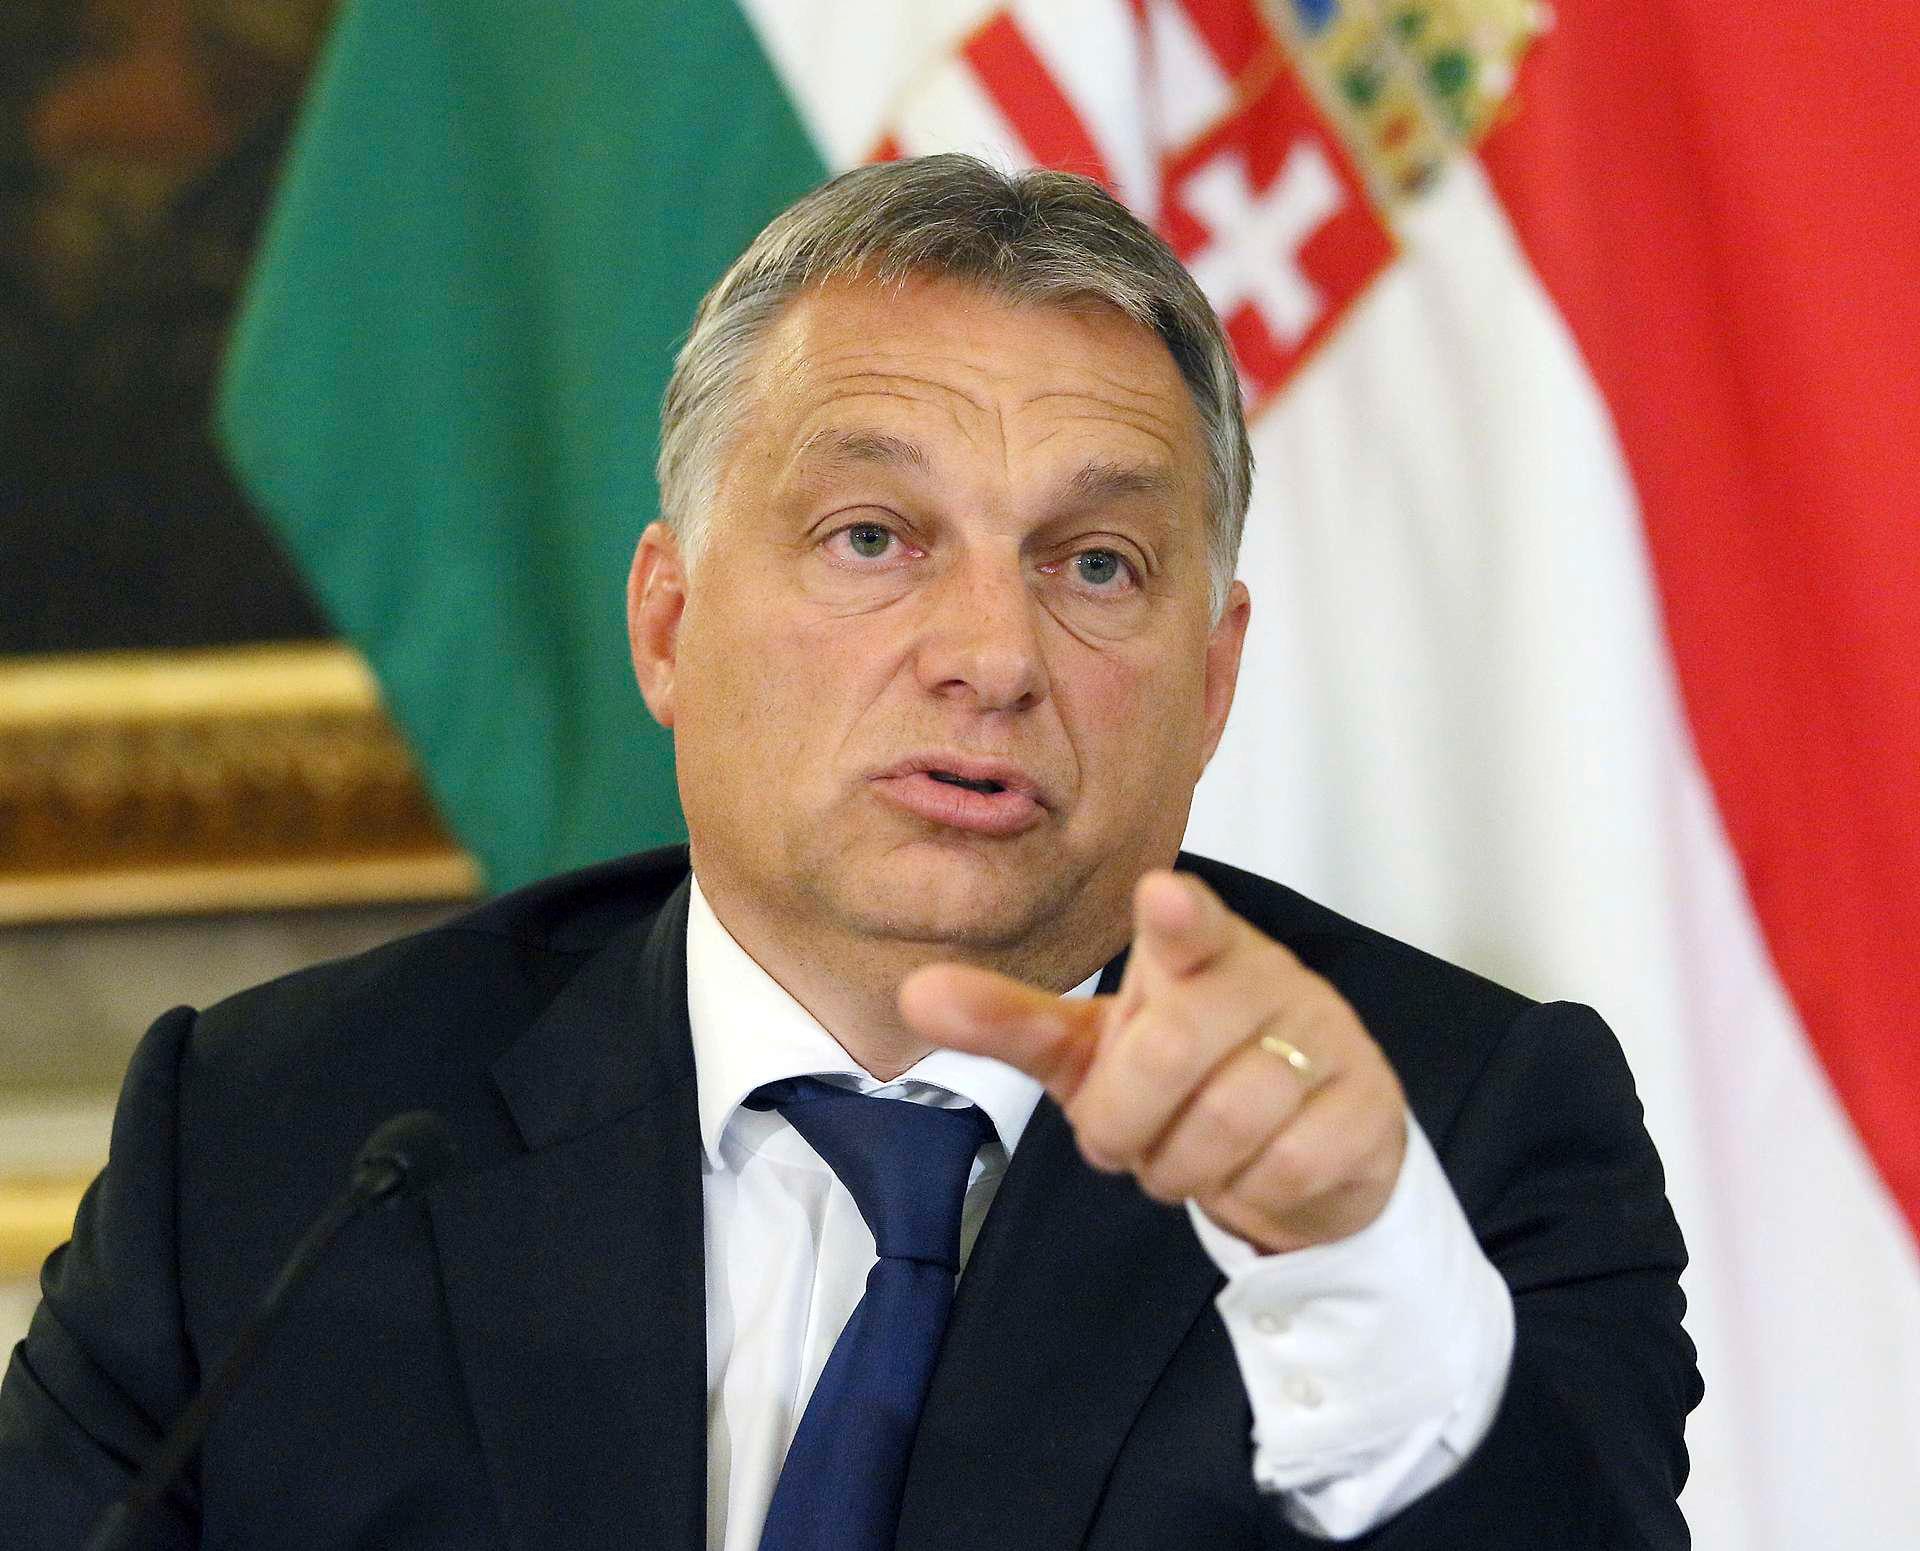 Viktor Orbán har vært statsminister i Ungarn siden 29. mai 2010. Han satt også med makten fra 1998 til 2002, men førte da en langt mer sentrumsorientert politikk enn han har gjort de siste seks årene.